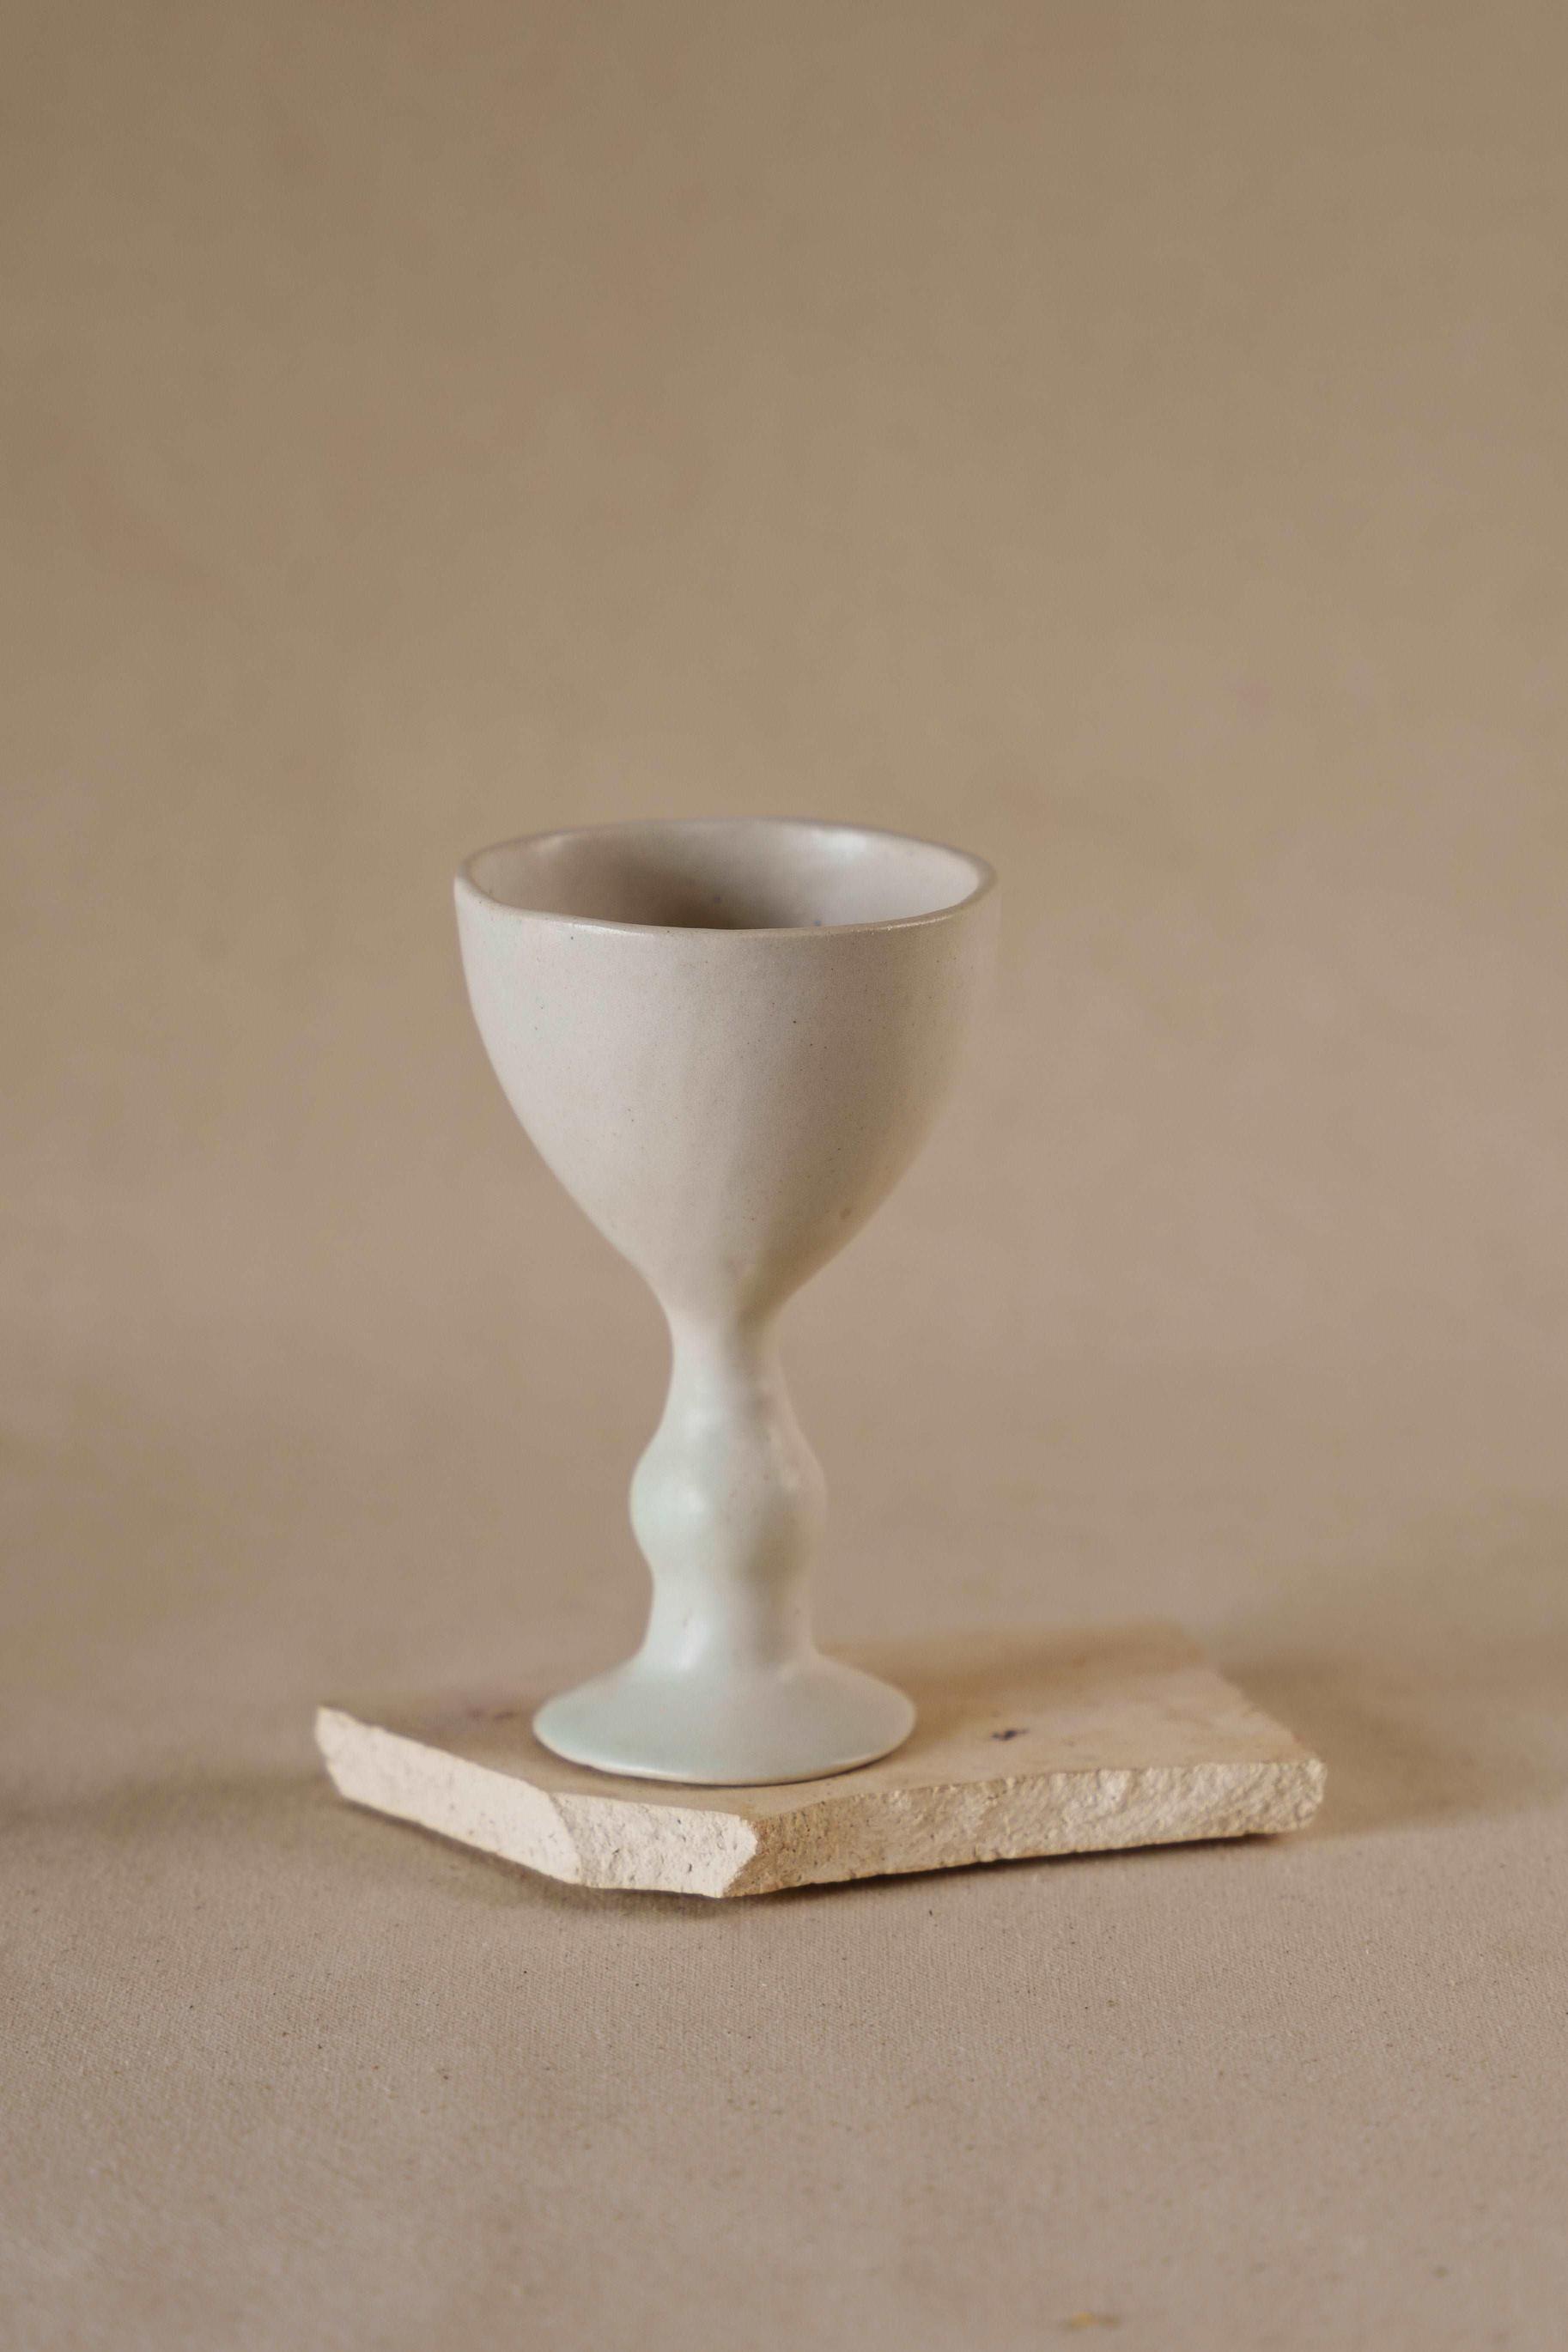 The Orby House Ceramic Wine Glass , Matte White ceramic glassware